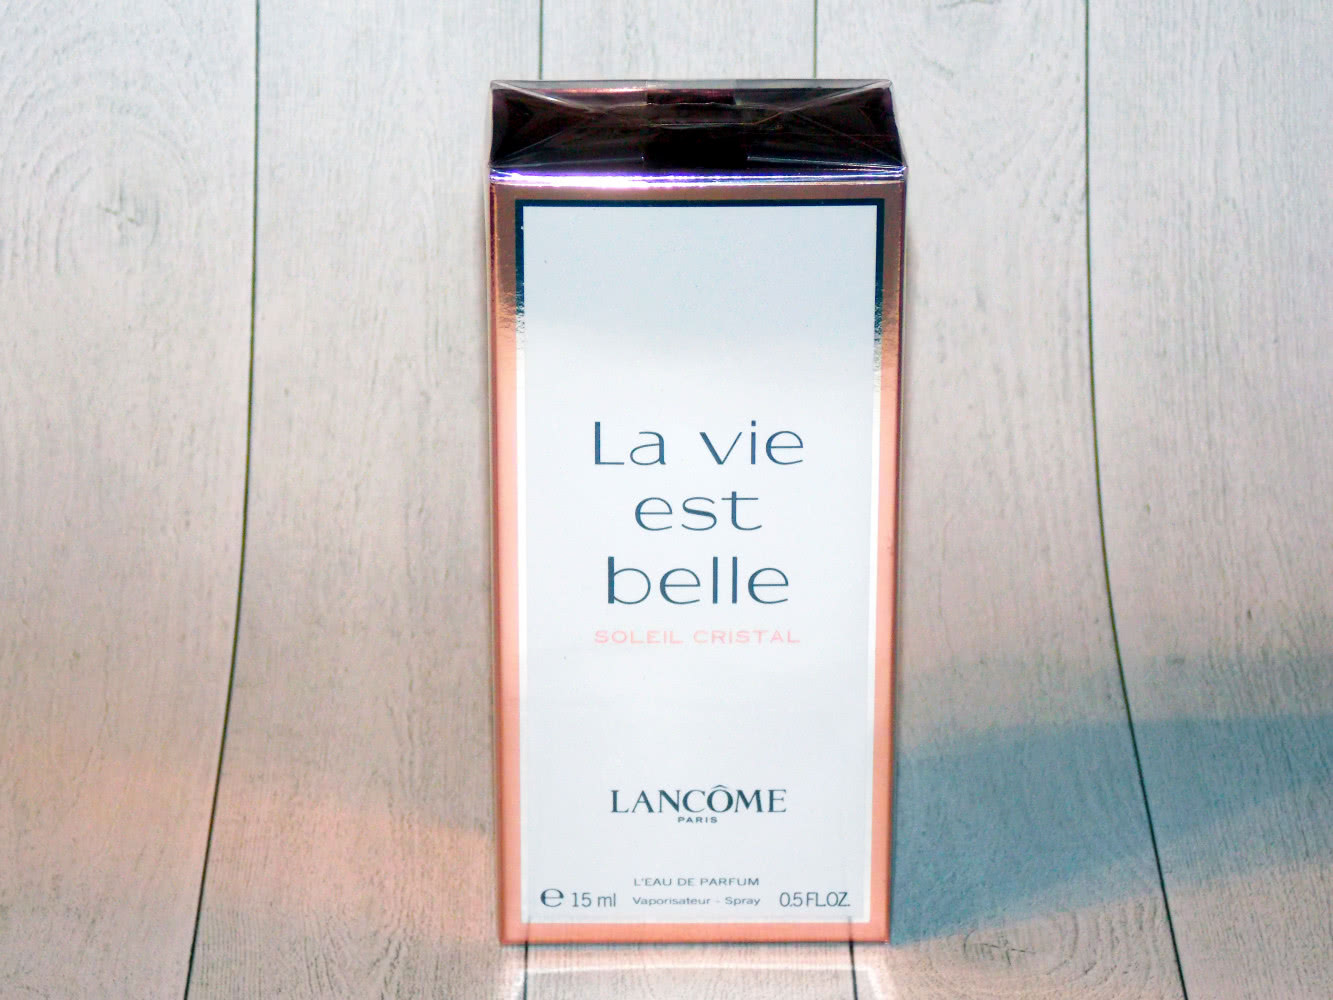 La Vie Est Belle Soleil Cristal парфюмерная вода